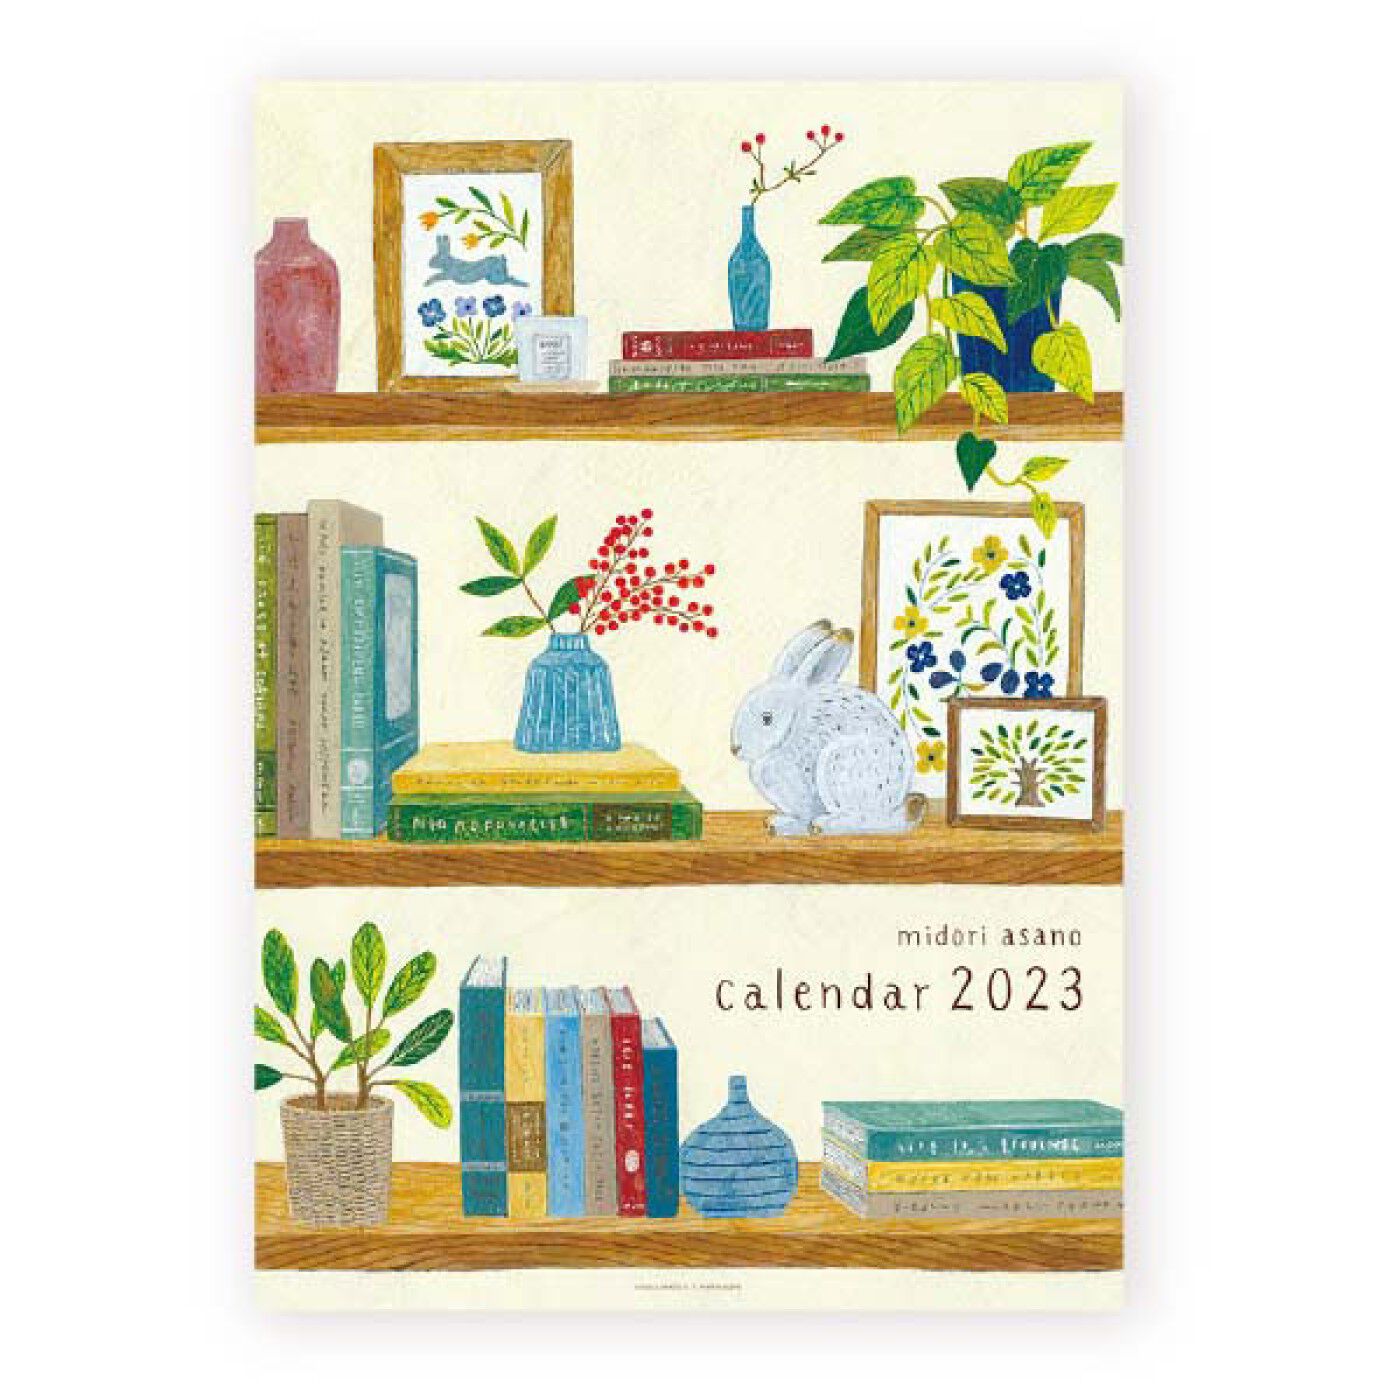 フェリシモの雑貨 Kraso|【数量限定】cozyca products 2023 カレンダー〈浅野みどり〉|カレンダーだけでなく、表紙も素敵。飾りたい。